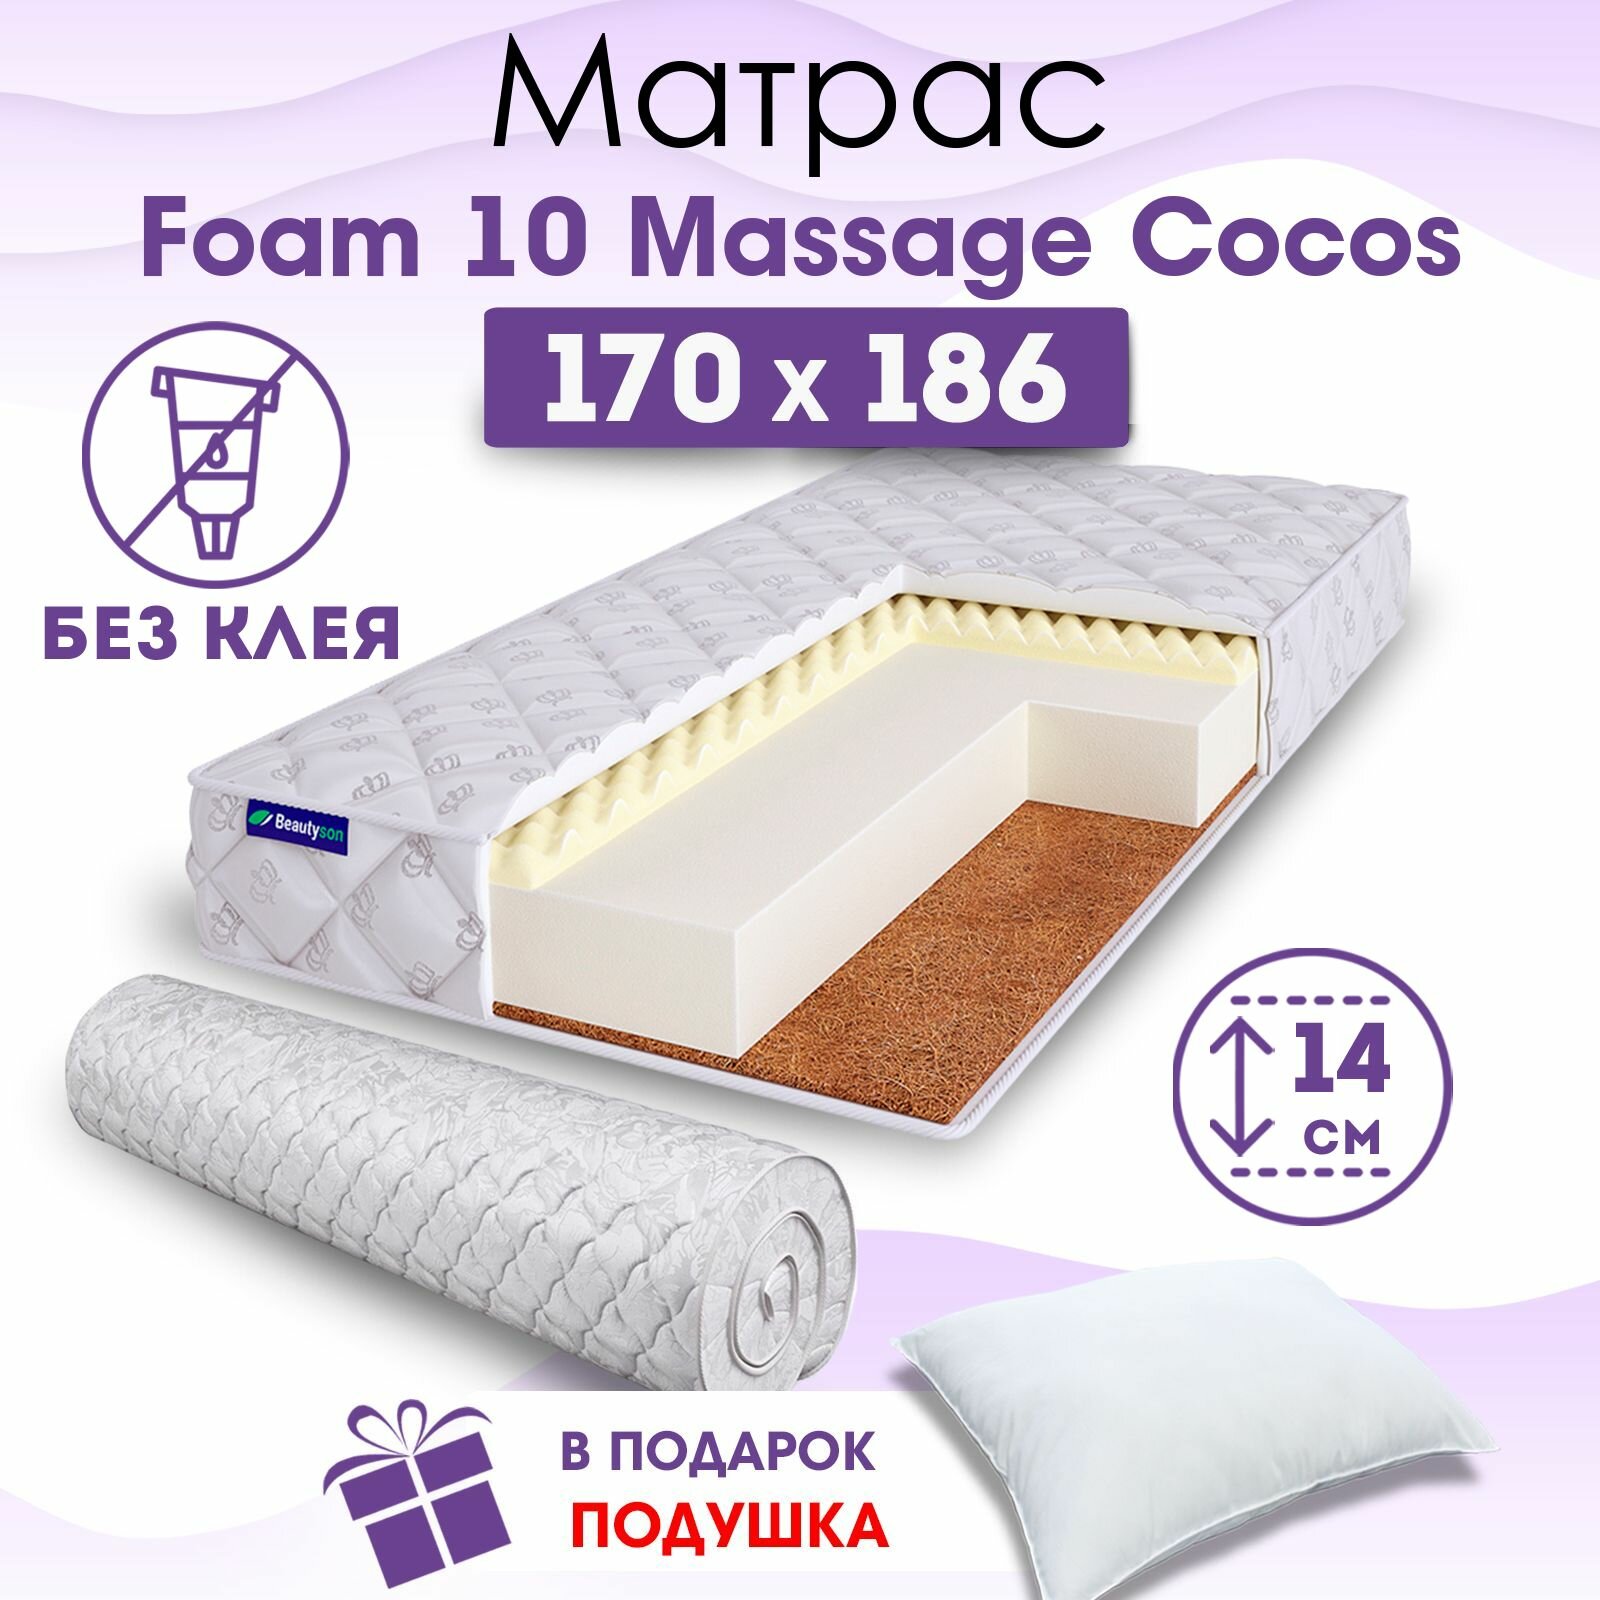 Ортопедический матрас Beautyson Foam 10 Massage Cocos без клея, 170х186, 14 см, беспружинный, двухспальный, на кровать, для дивана, мягкий, не высокий